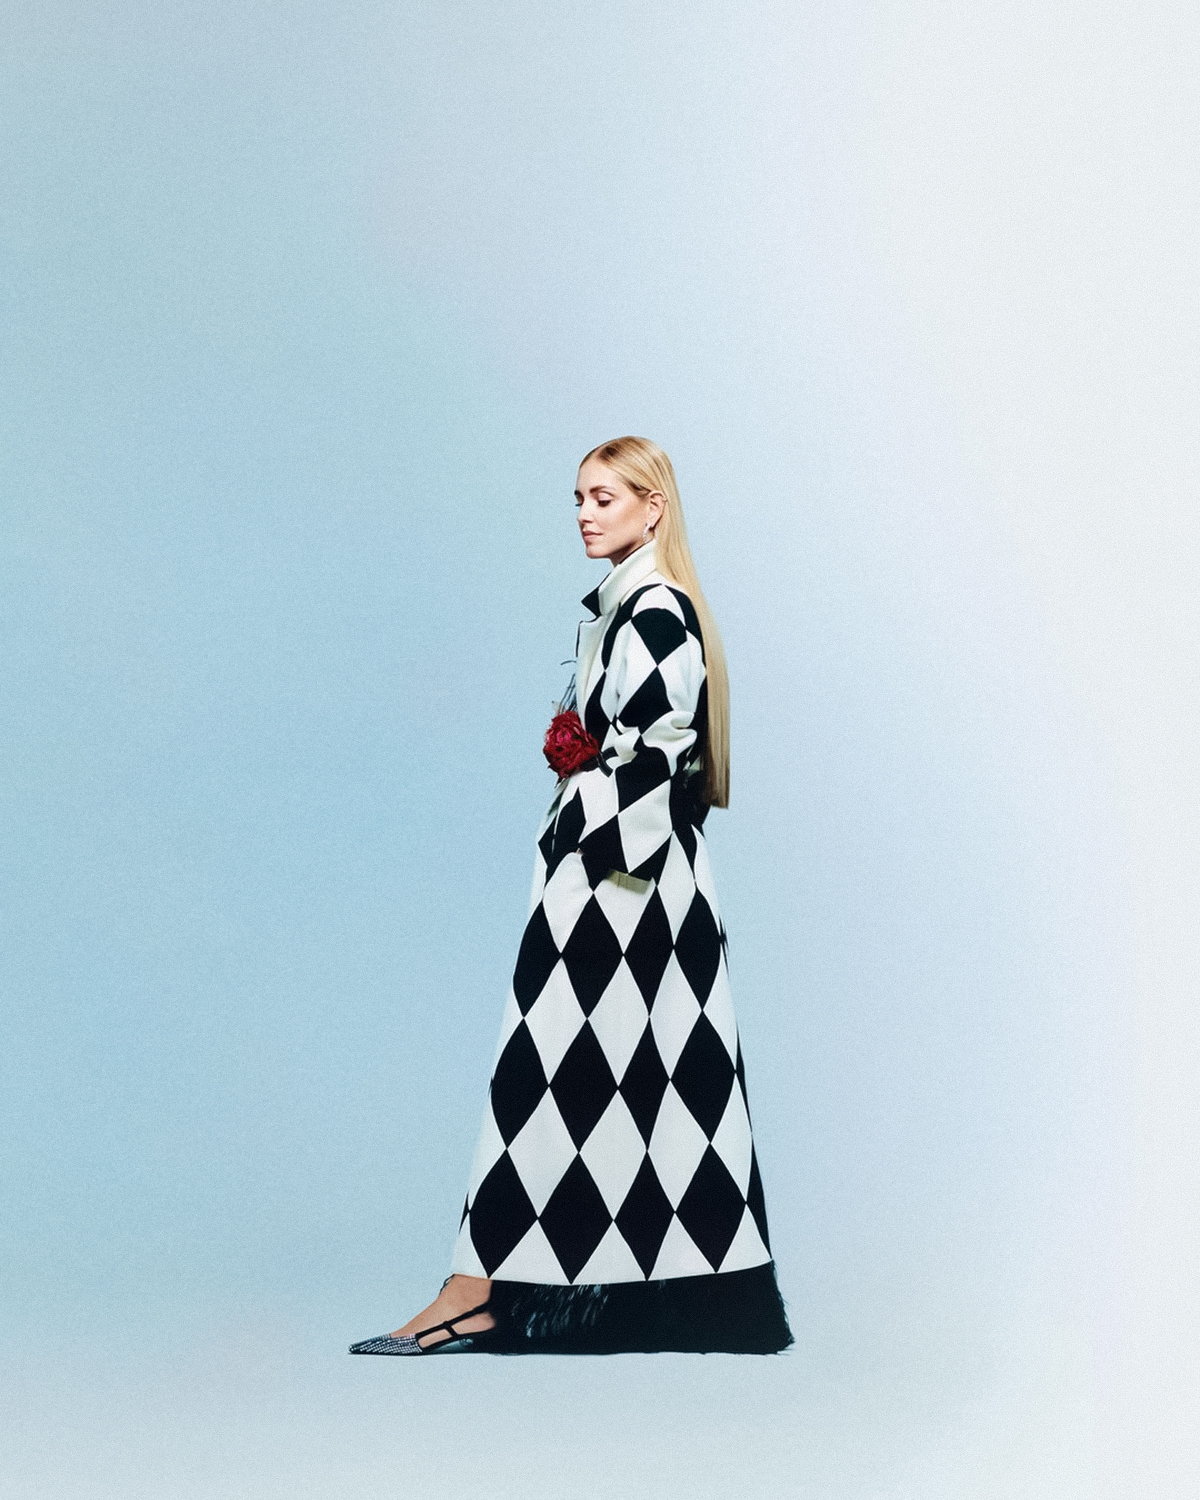 Chiara Ferragni covers Vogue Italia October 2021 by Scandebergs